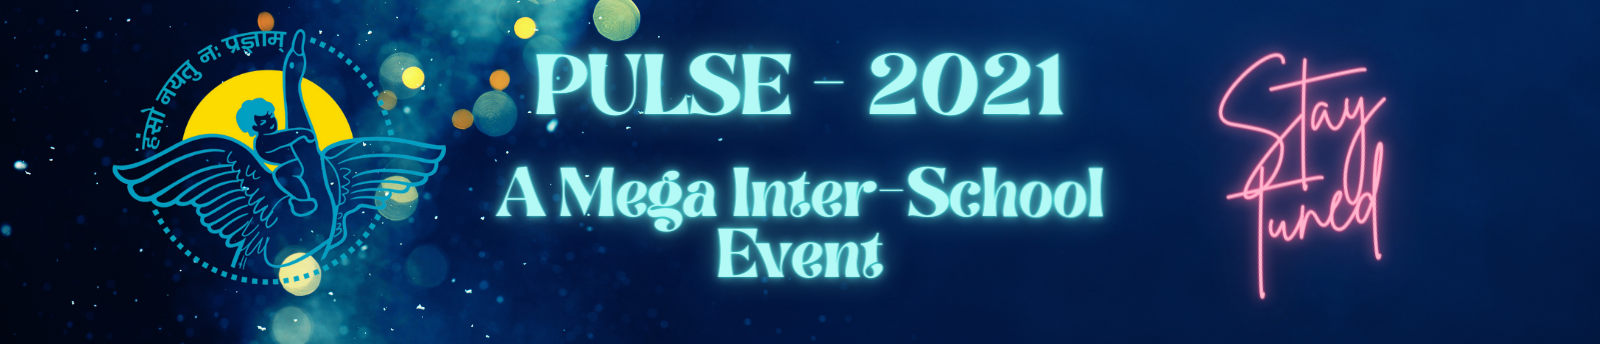 PULSE 2021 - A Mega Inter School Event